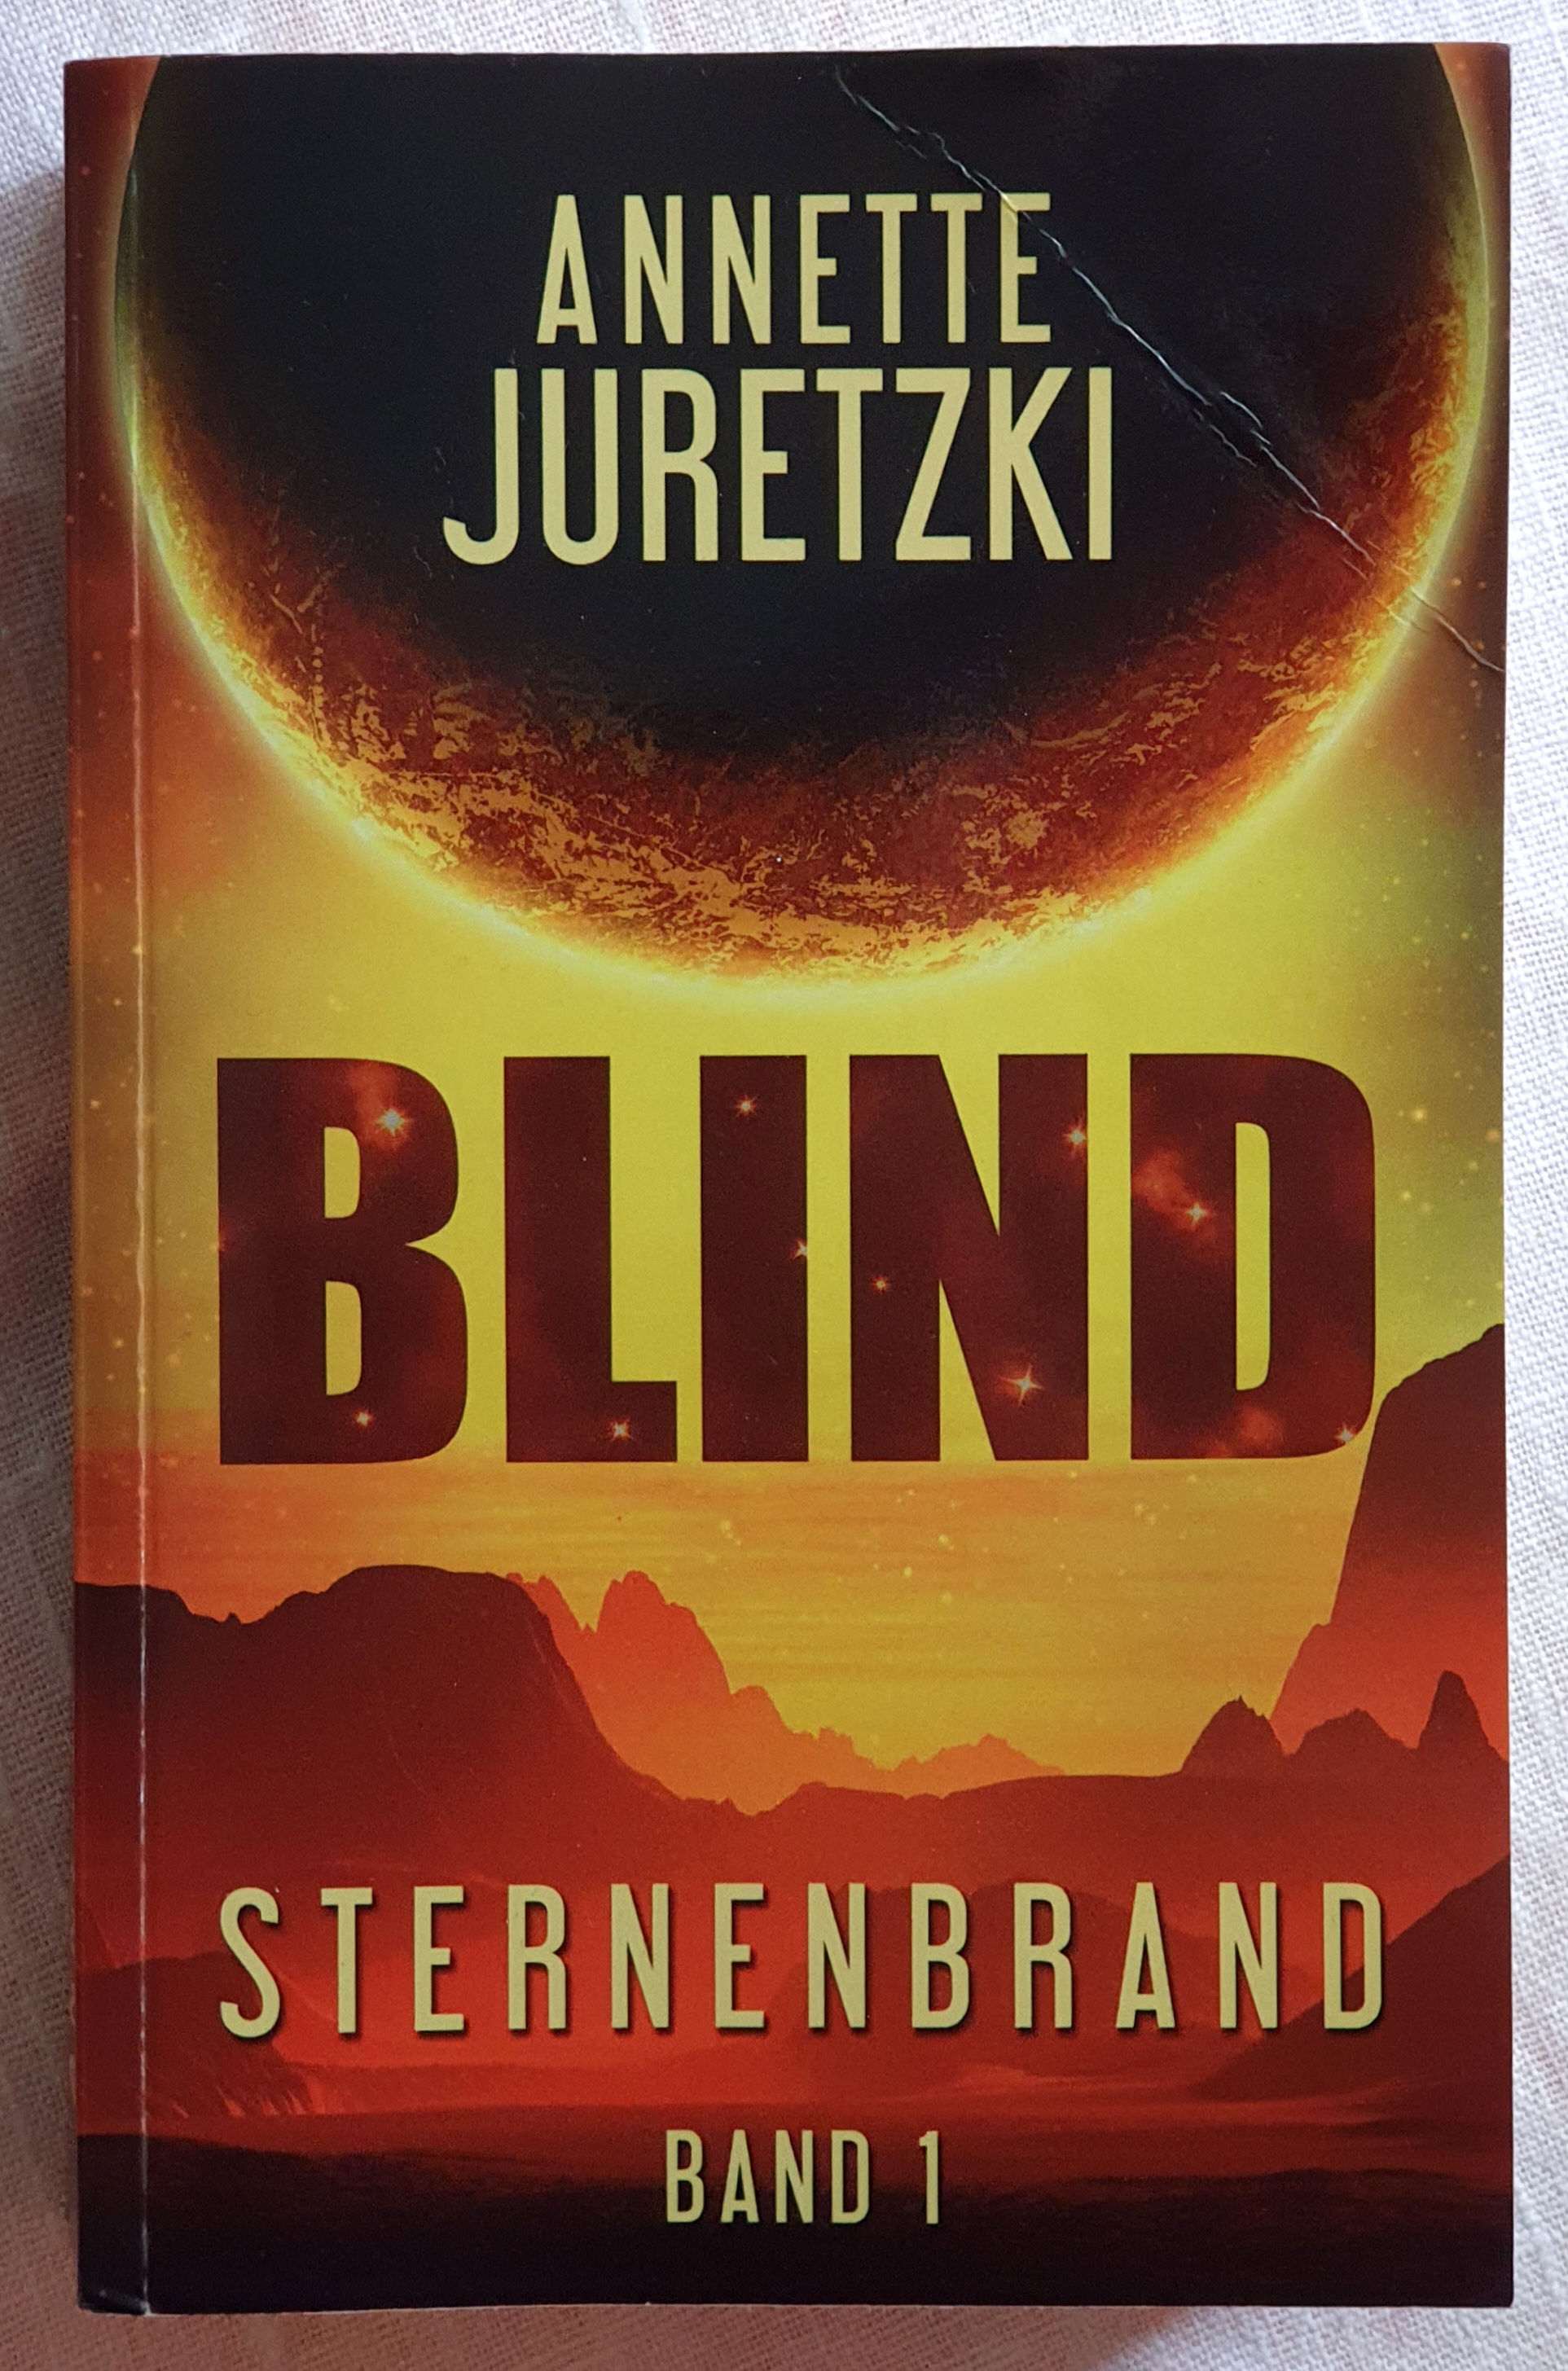 Deckblatt mit orangeroter Landschaft und einem großen dunklen Himmelskörper hinter dem die Sonne scheint. Text: Annette Juretzki, Blind, Sternenbrand, Band 1.